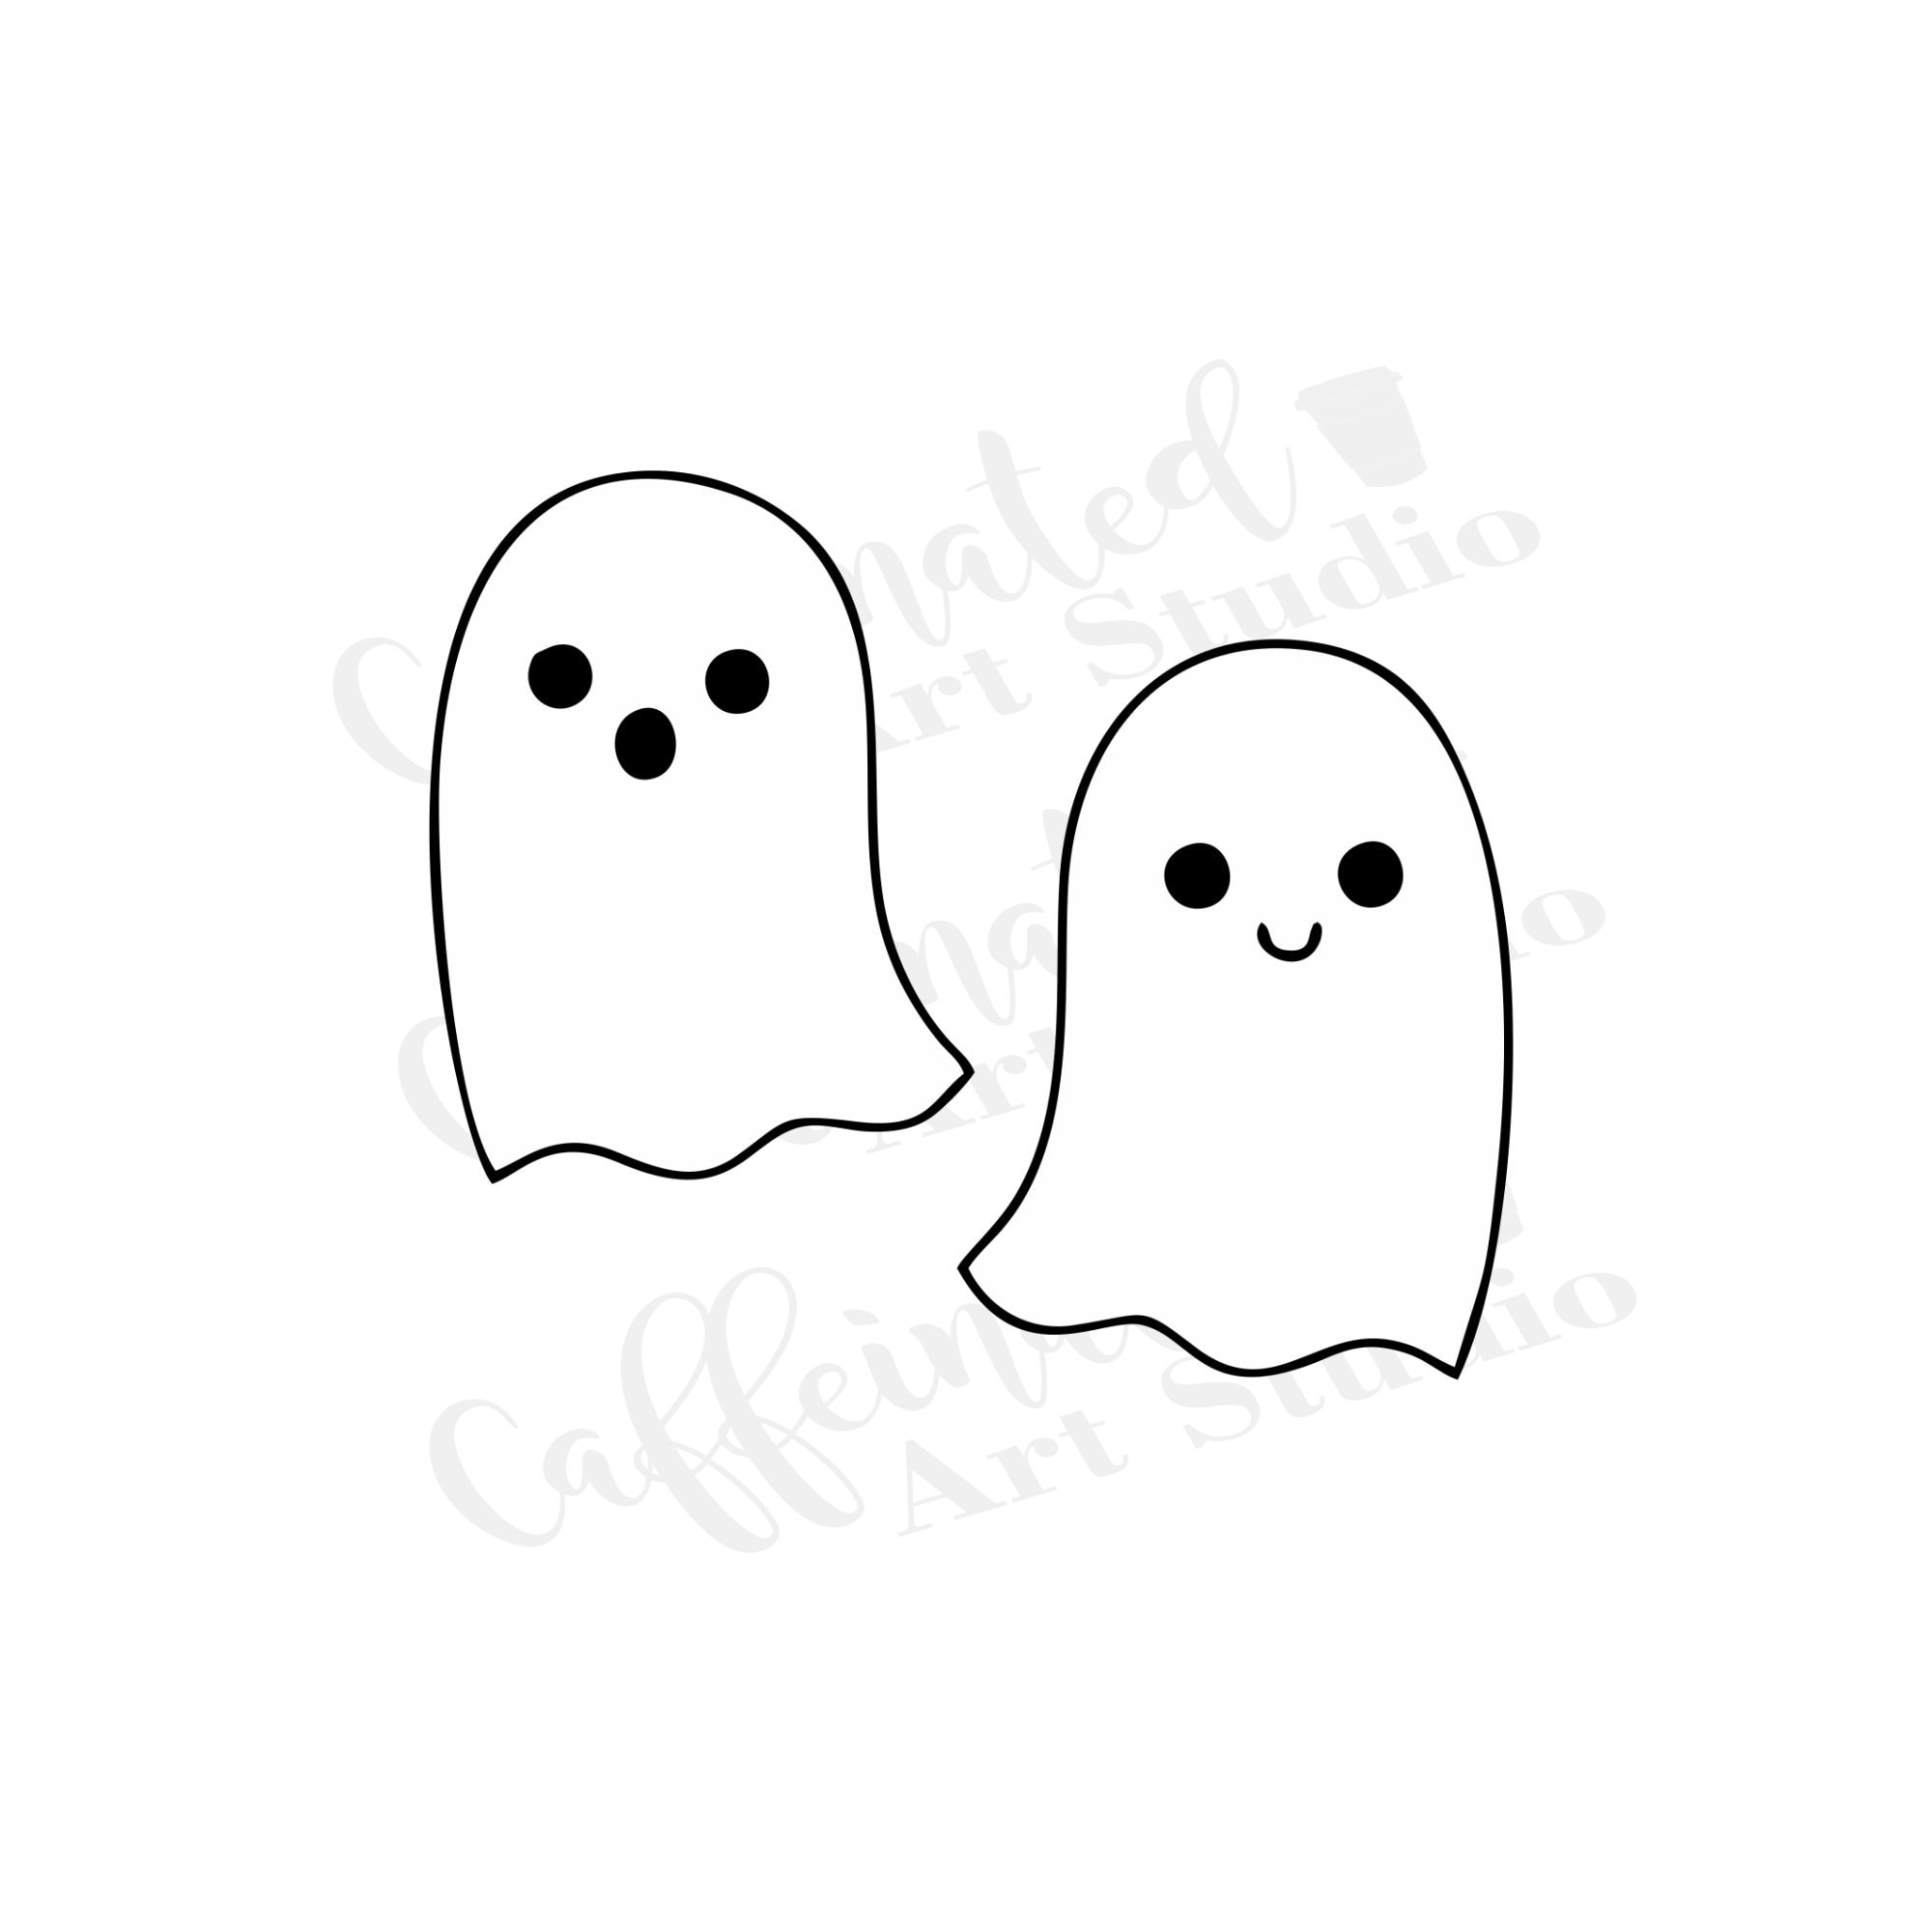 Ghosts svg / ghost svg / Halloween svg / digital download | Etsy